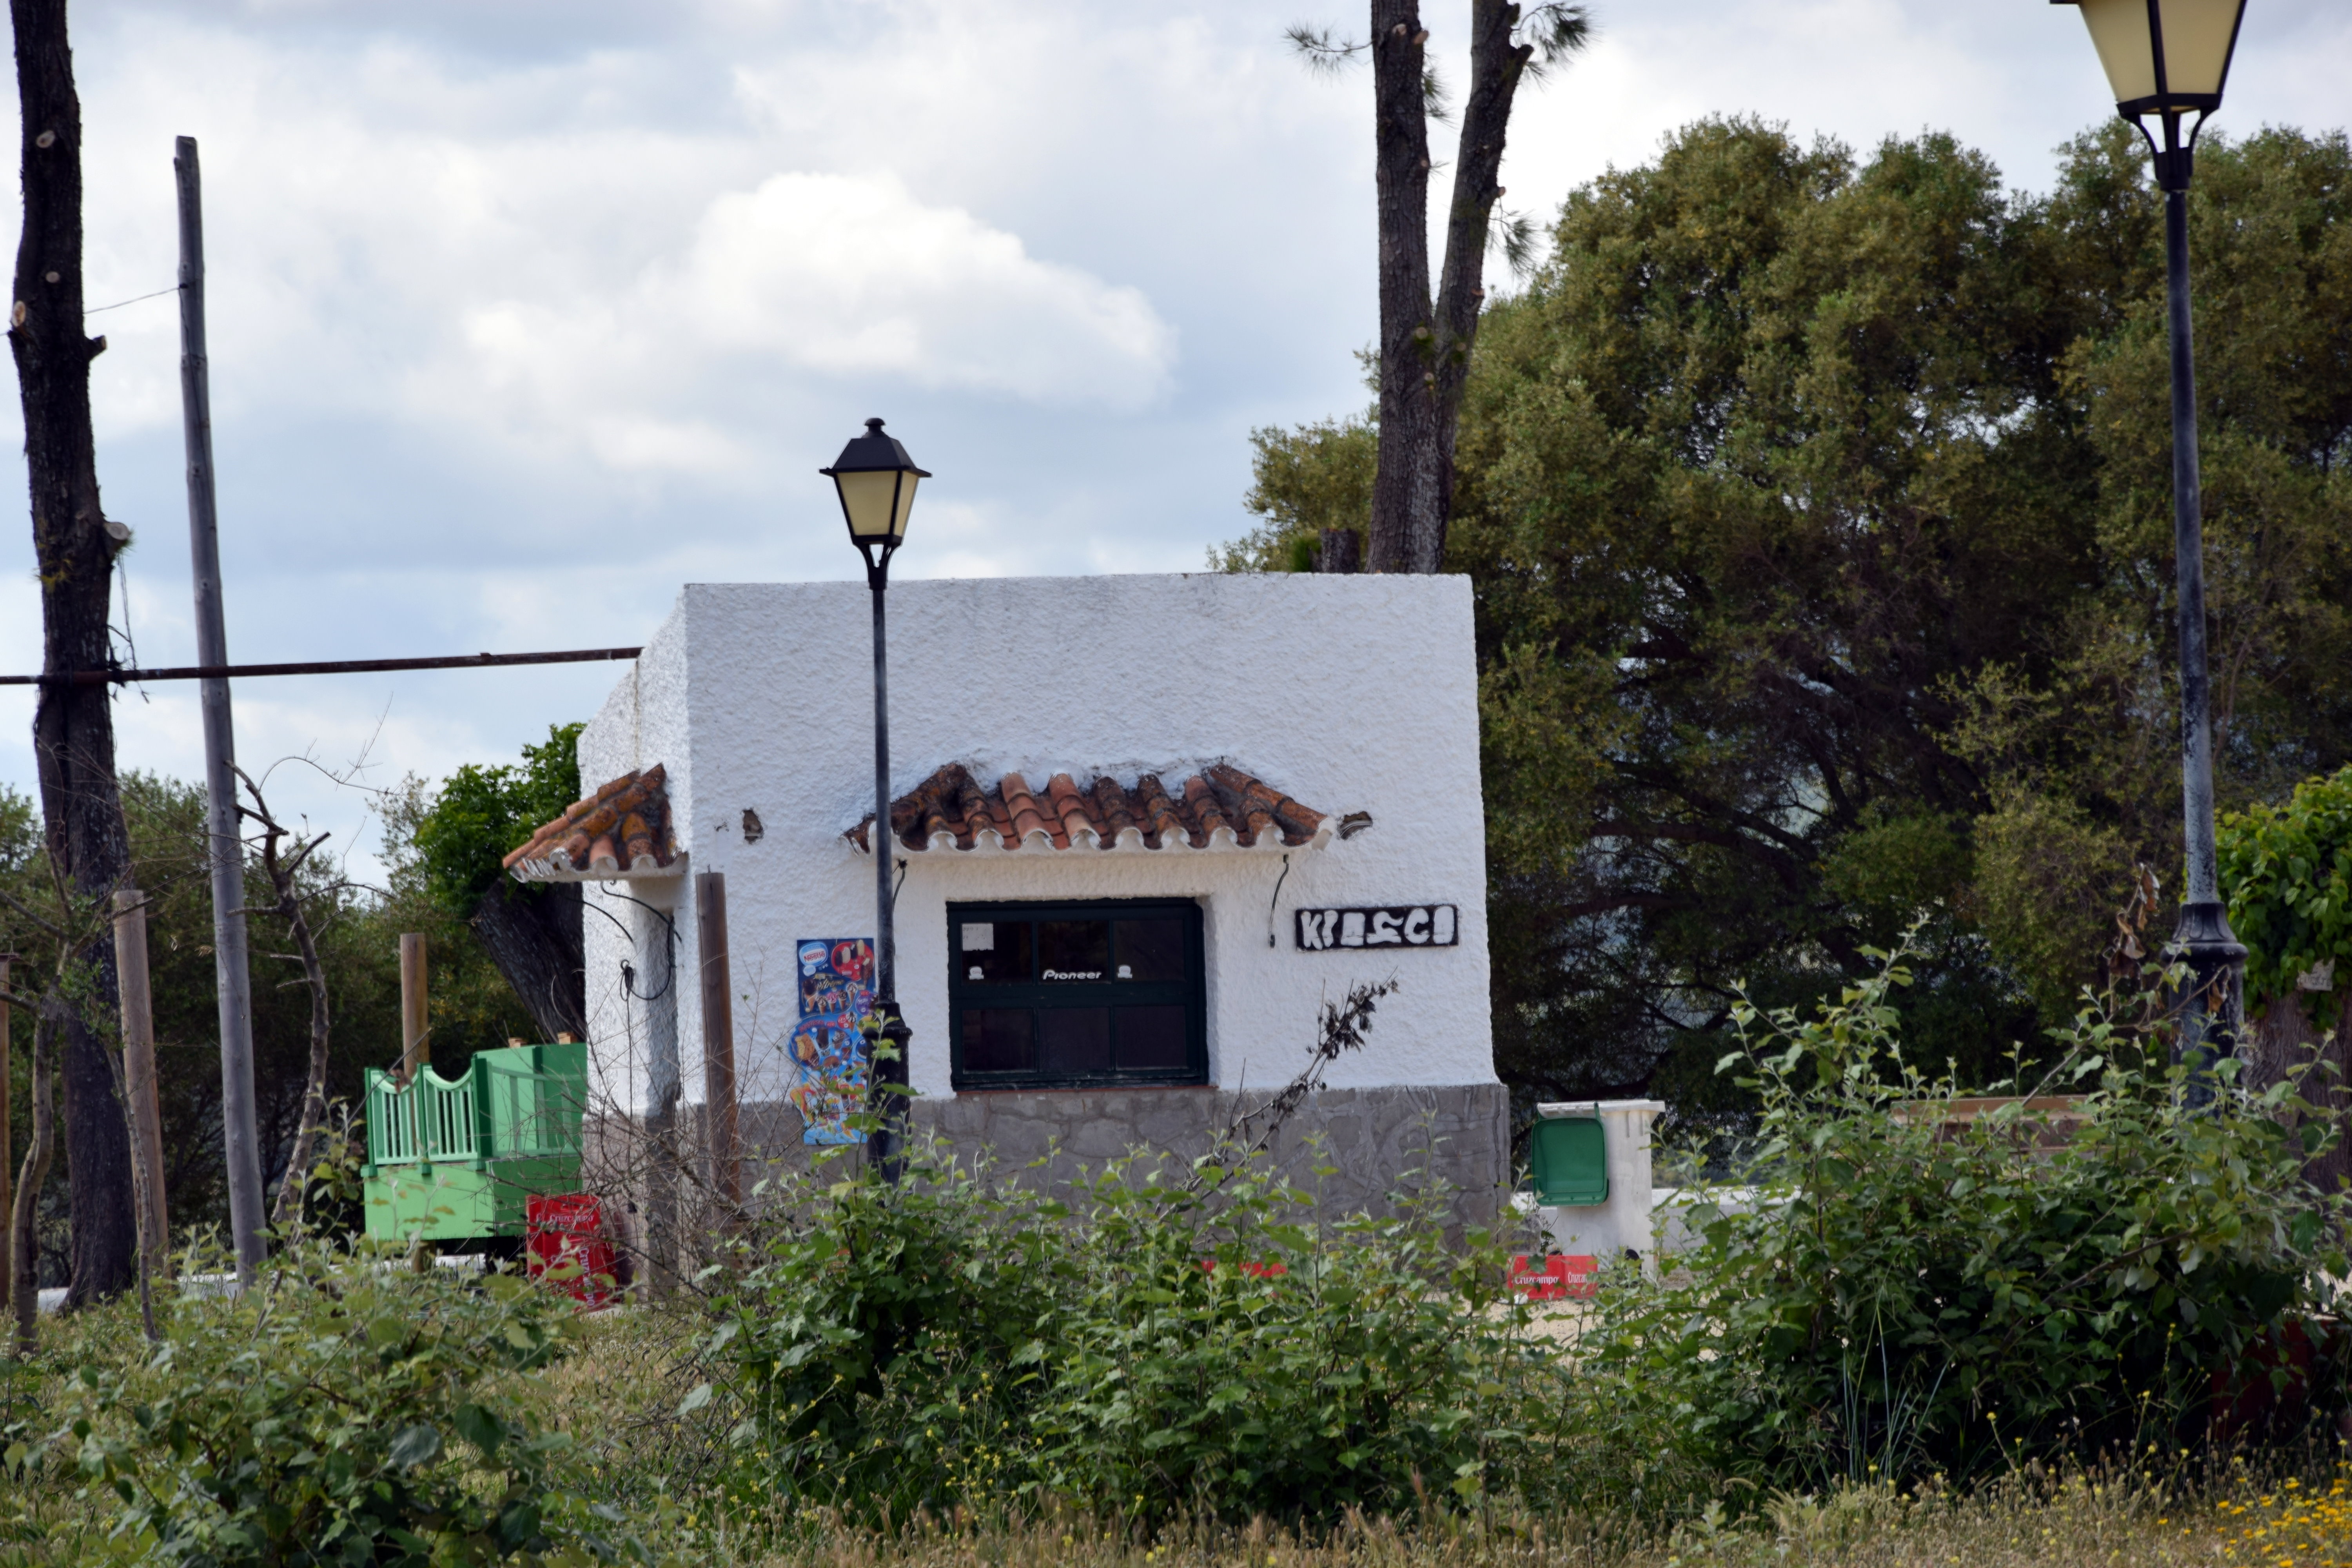 Foto de Facinas (Cádiz), España